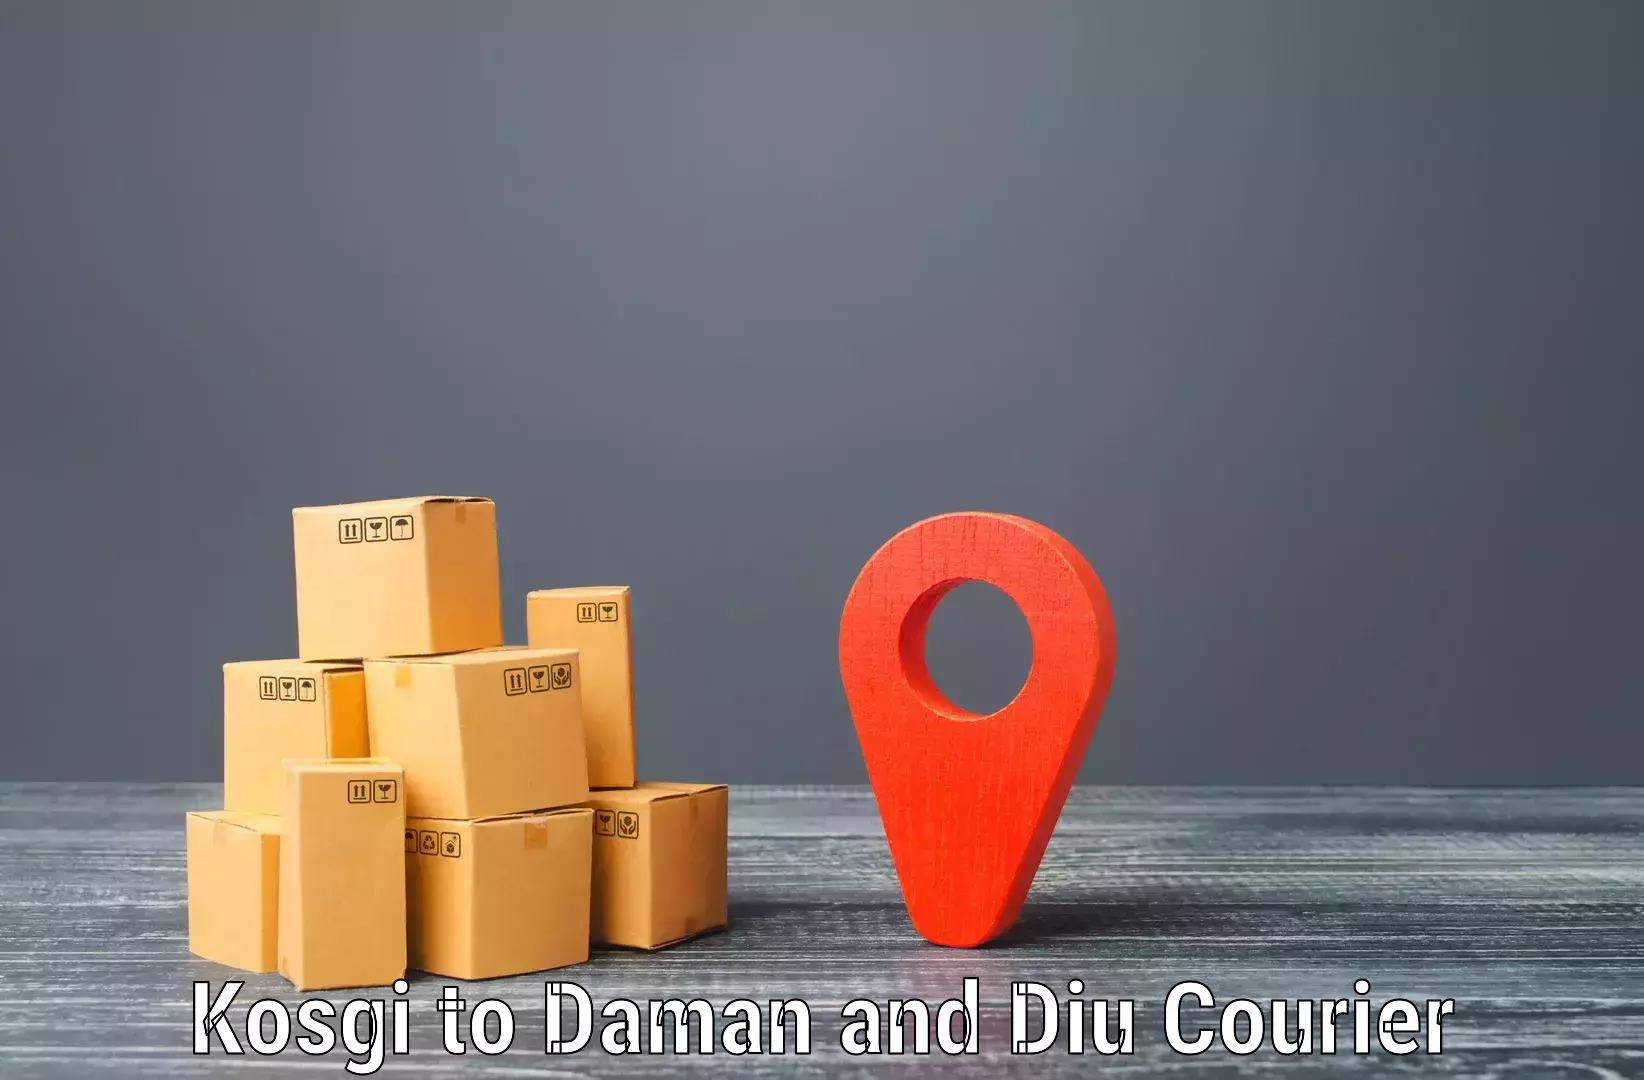 Comprehensive logistics solutions Kosgi to Daman and Diu